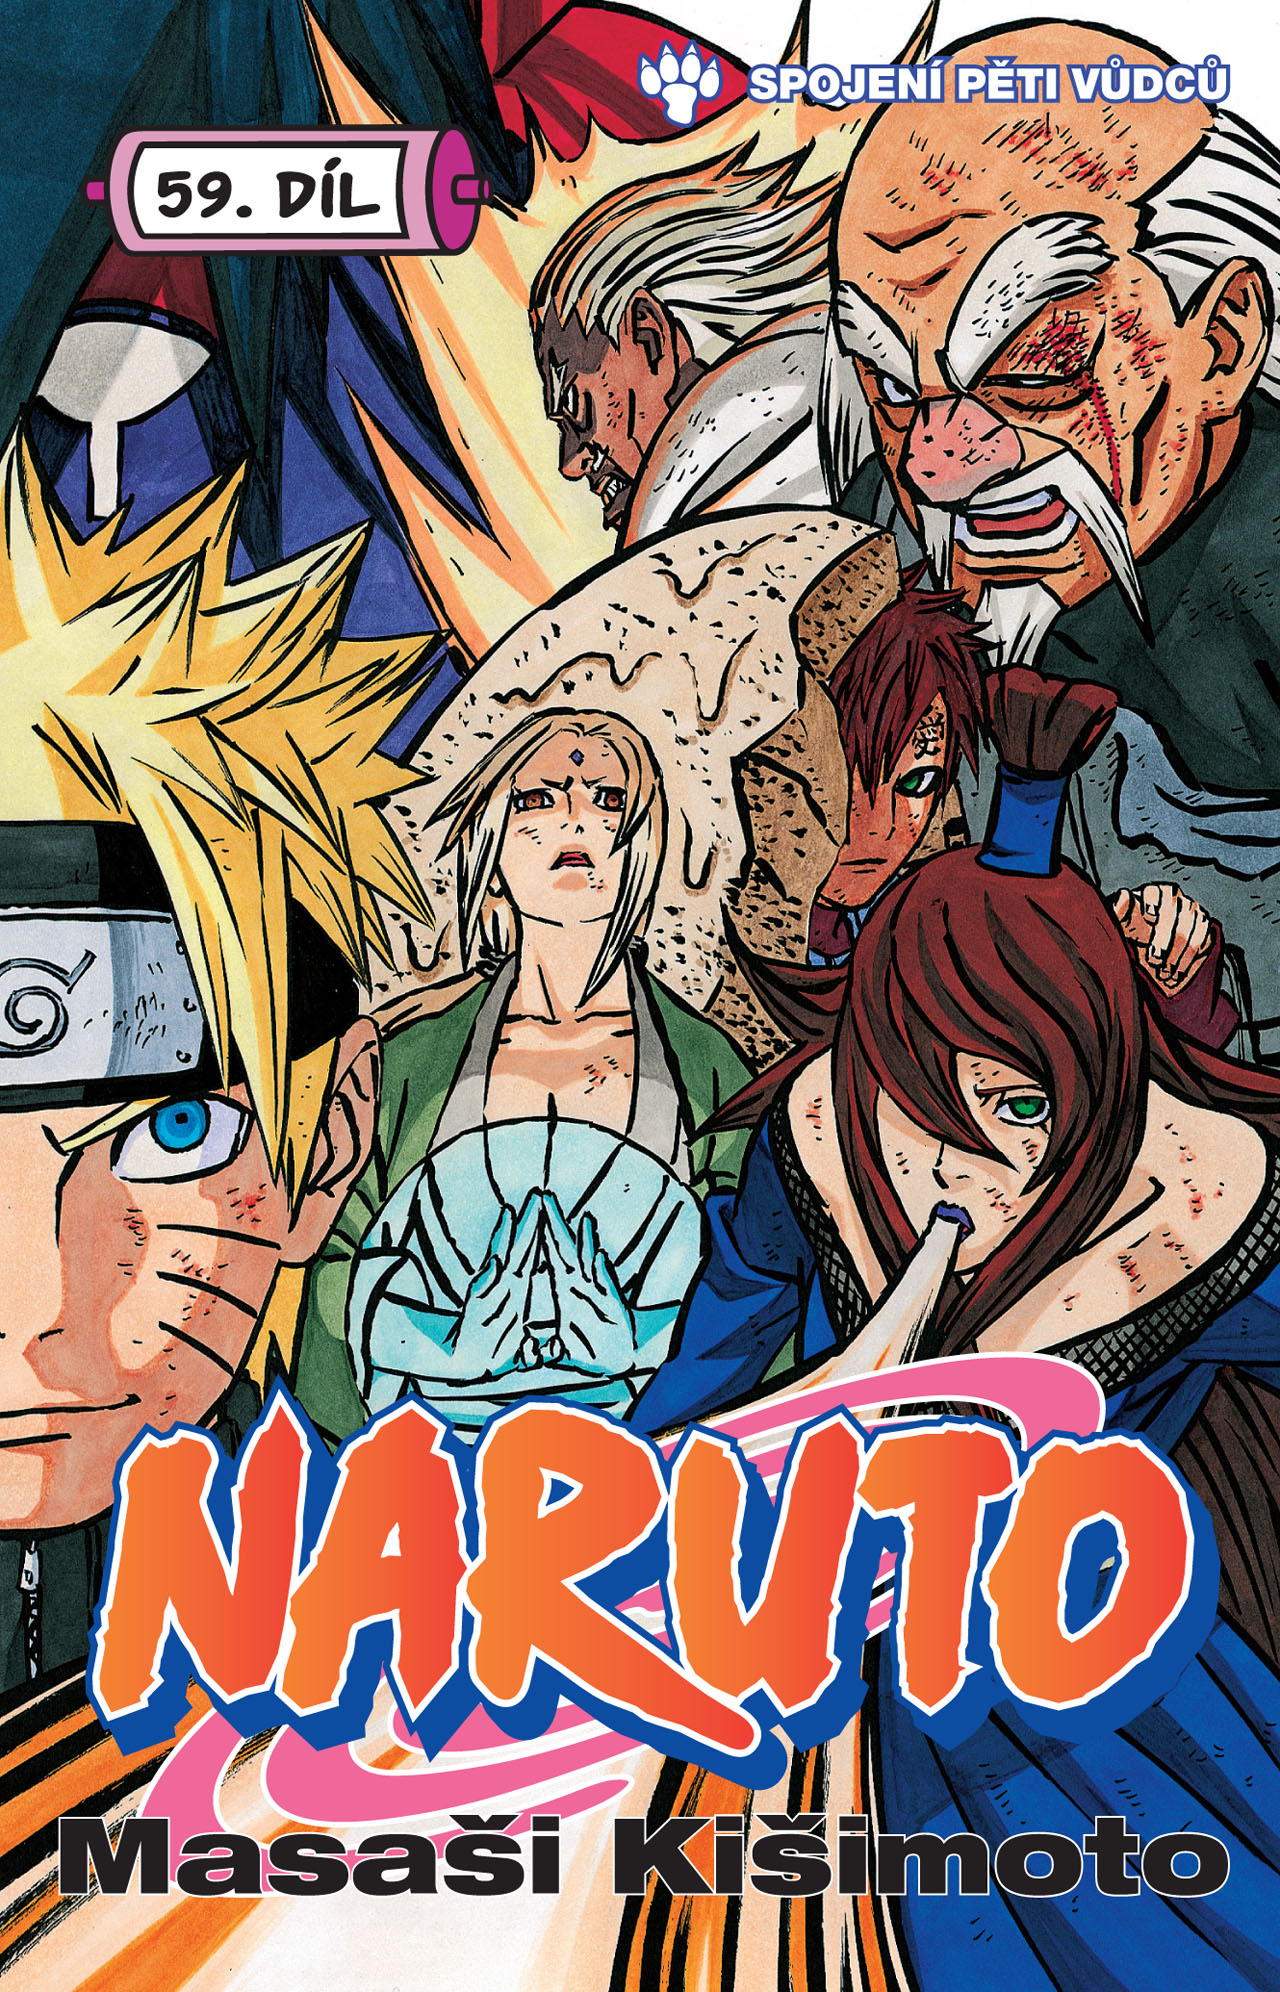 obrázek k novince - Naruto 59: Spojení pěti vůdců